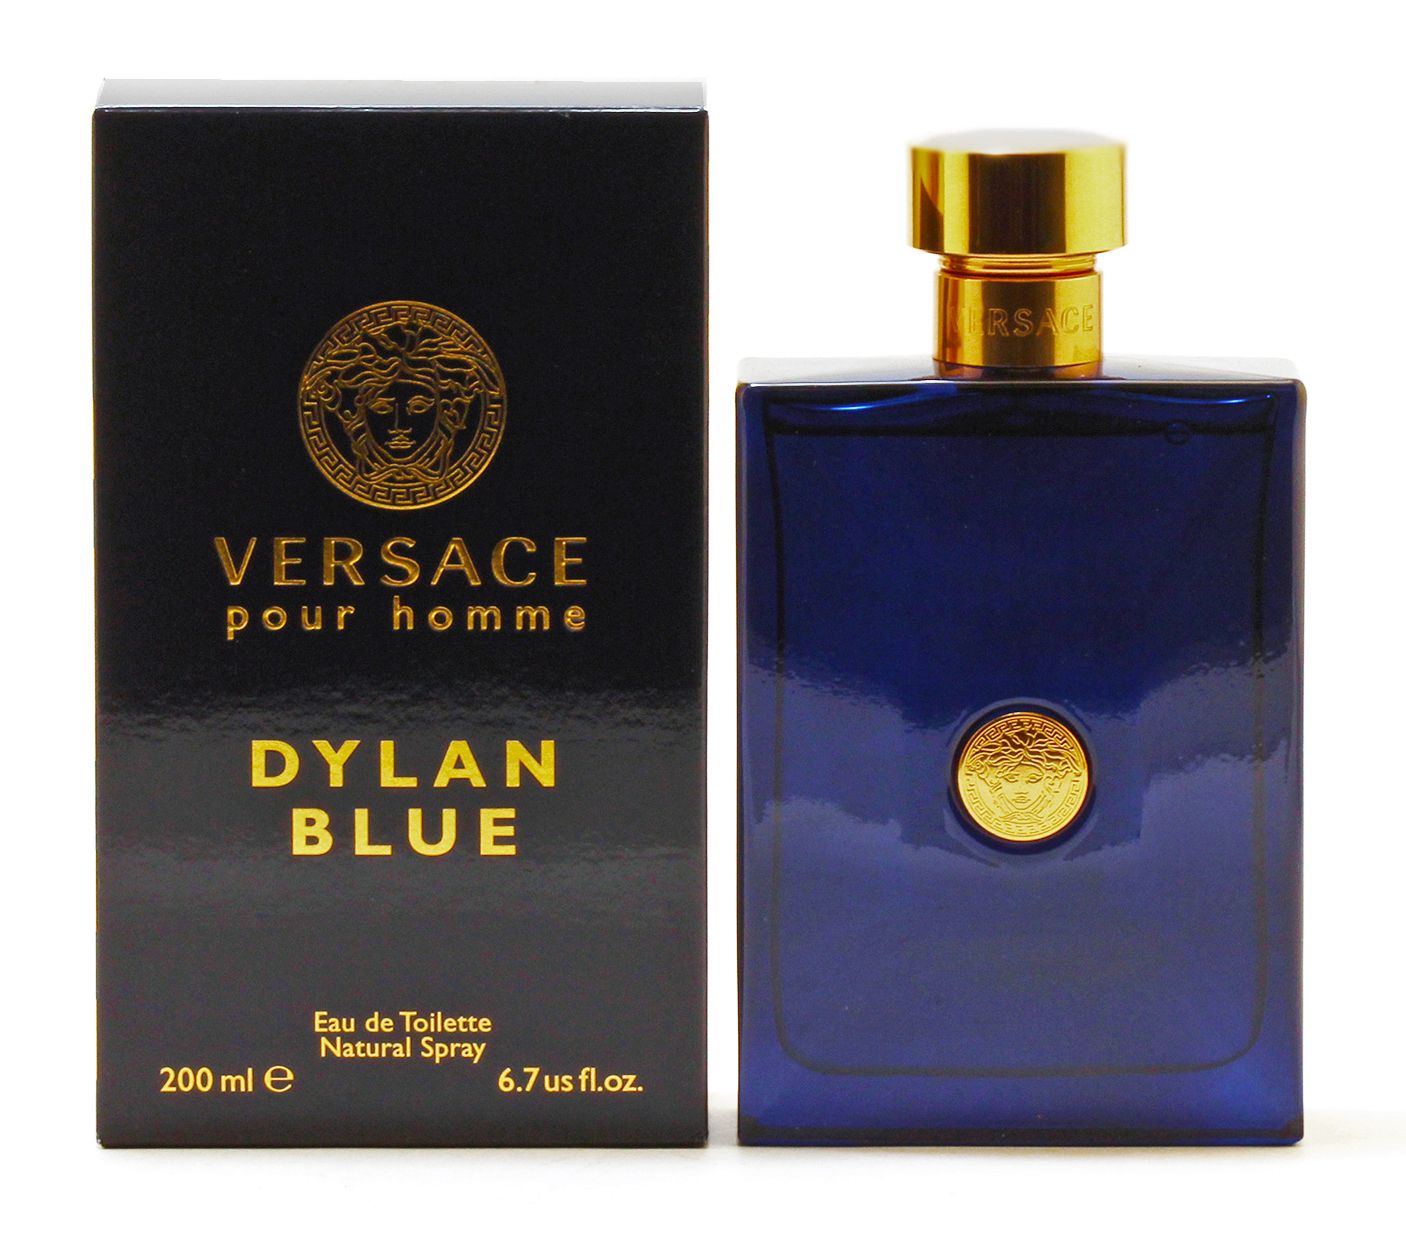 Versace Eau de Toilette Natural Spray, Dylan Blue - 1.70 fl.oz.